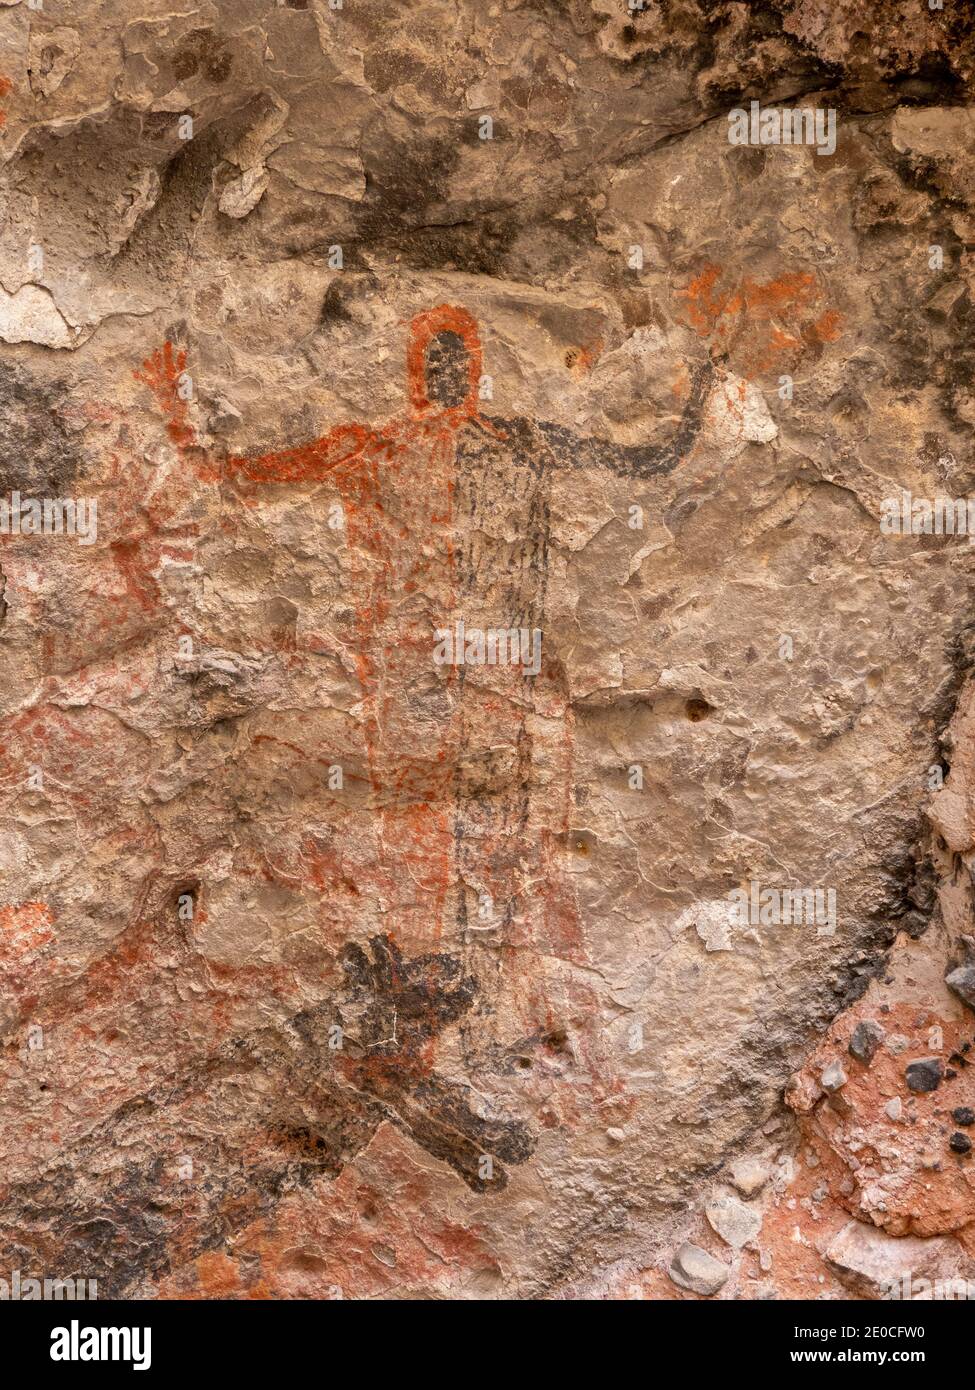 Pictogrammes d'art rupestre du peuple Cochimi, Cueva del Raton, site classé au patrimoine mondial de l'UNESCO, Sierra de San Francisco, Baja California sur, Mexique Banque D'Images